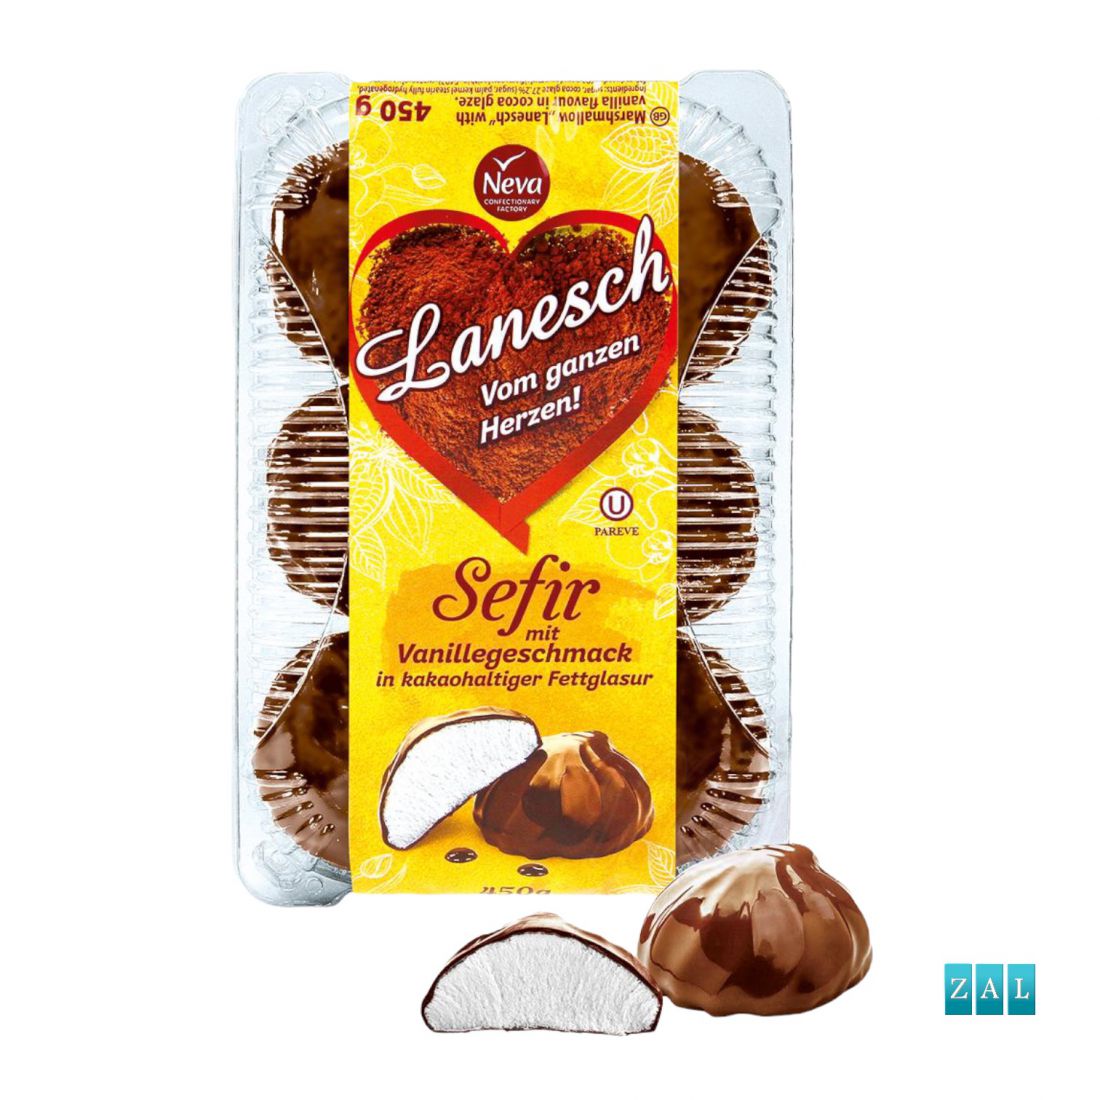 ”Zefir Lanezs” vaníliás habos édesség csokoládé bevonatban 450g